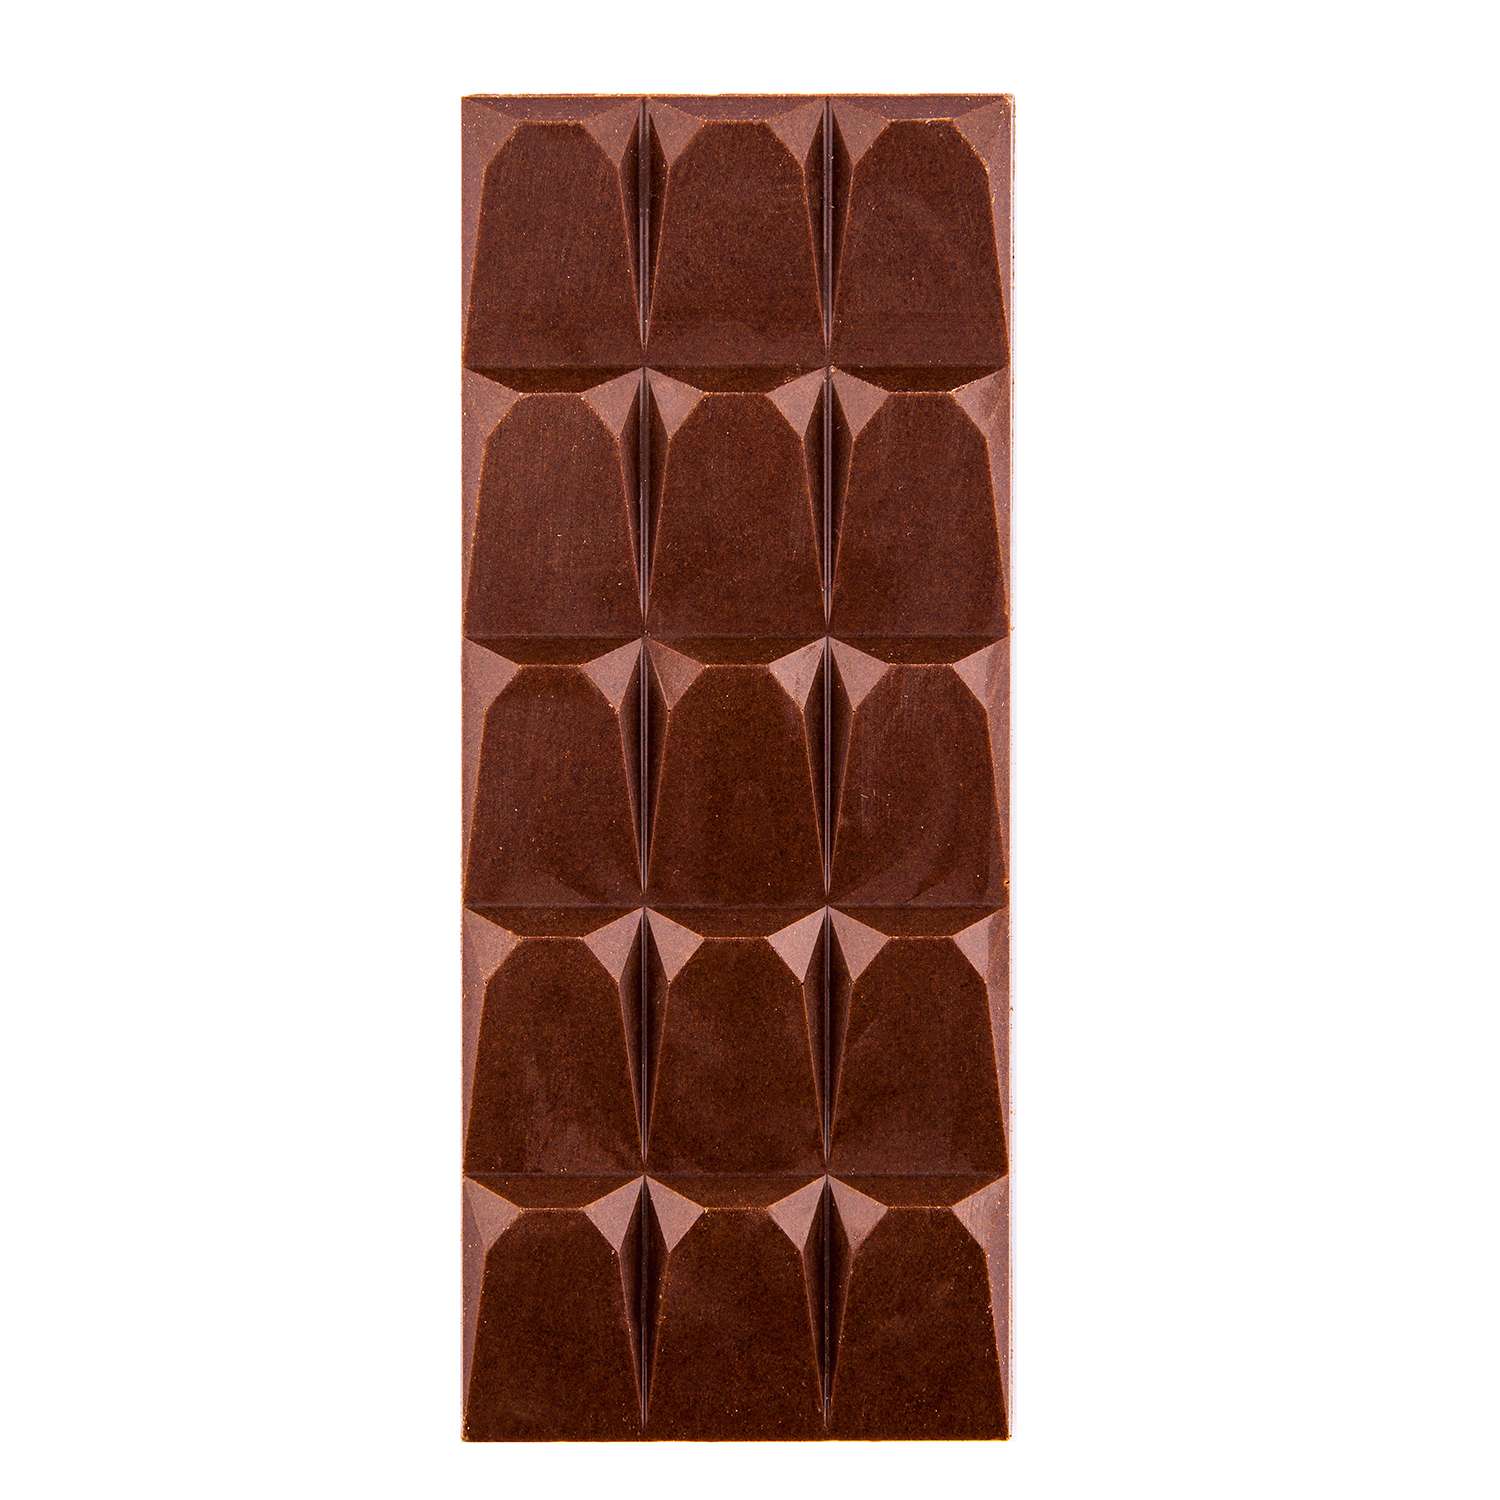 Шоколад ПроПорция из кэроба классический 75г - фото 3